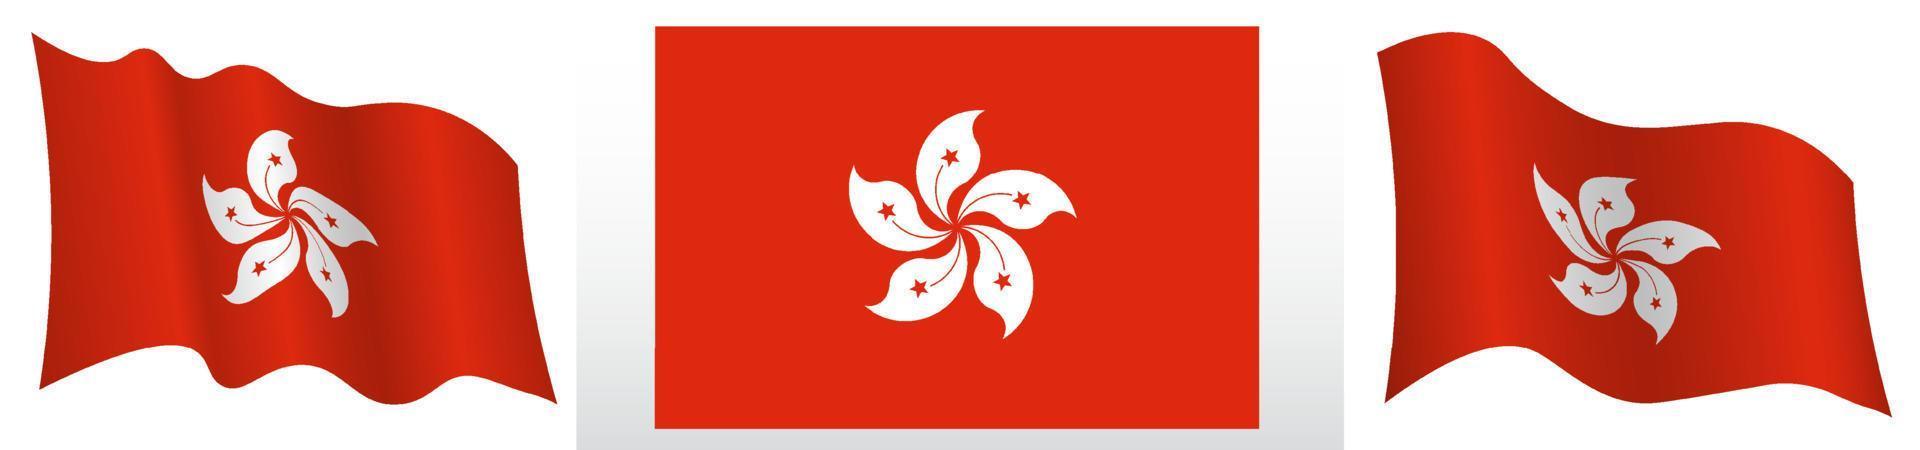 Flagge von Hongkong in statischer Position und in Bewegung, flatternd im Wind in genauen Farben und Größen, auf weißem Hintergrund vektor